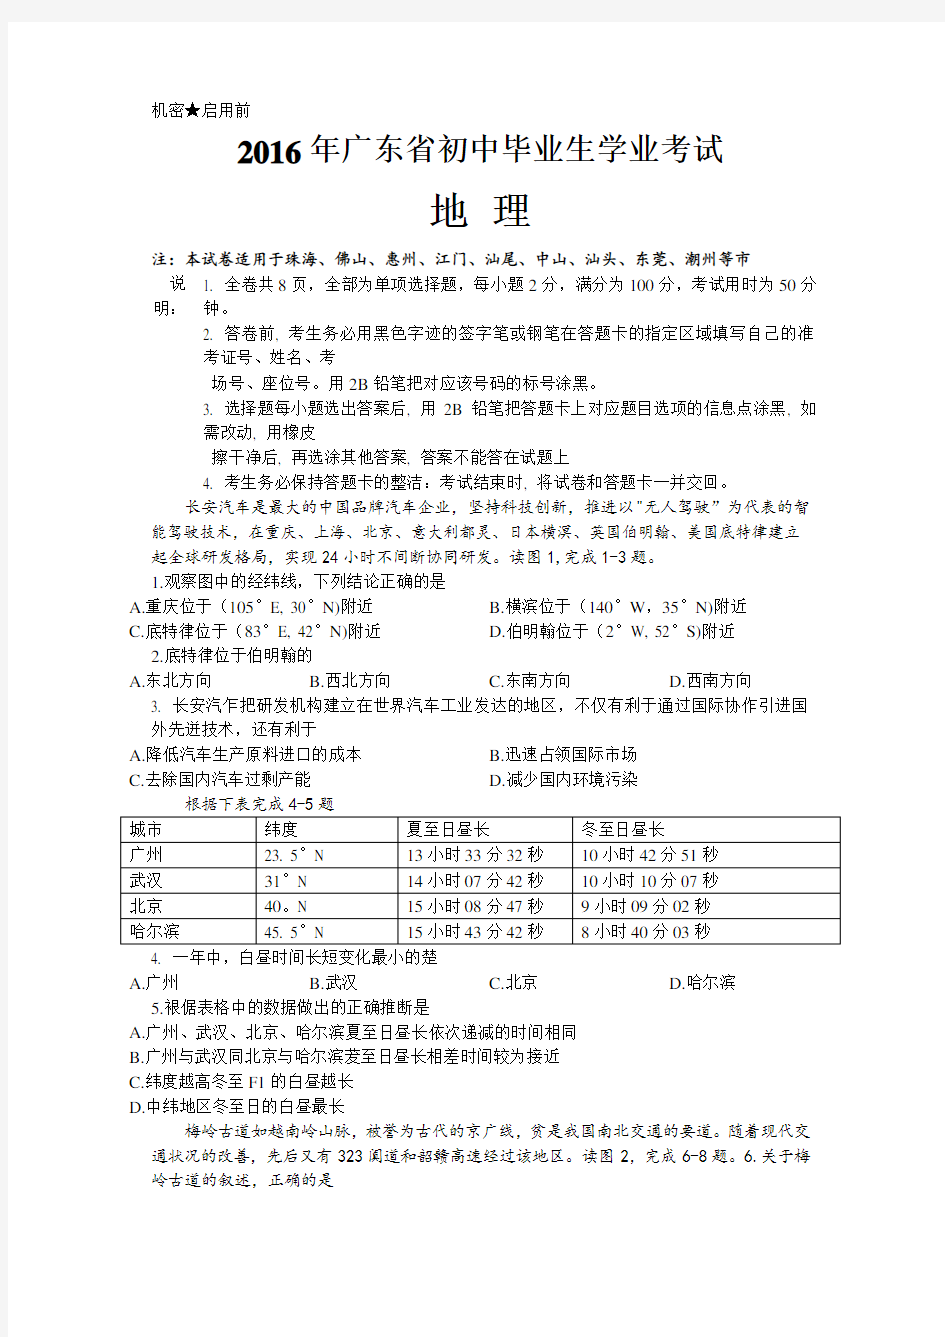 广东省初中生物地理学业考试真题集合试卷及答案高清汇总